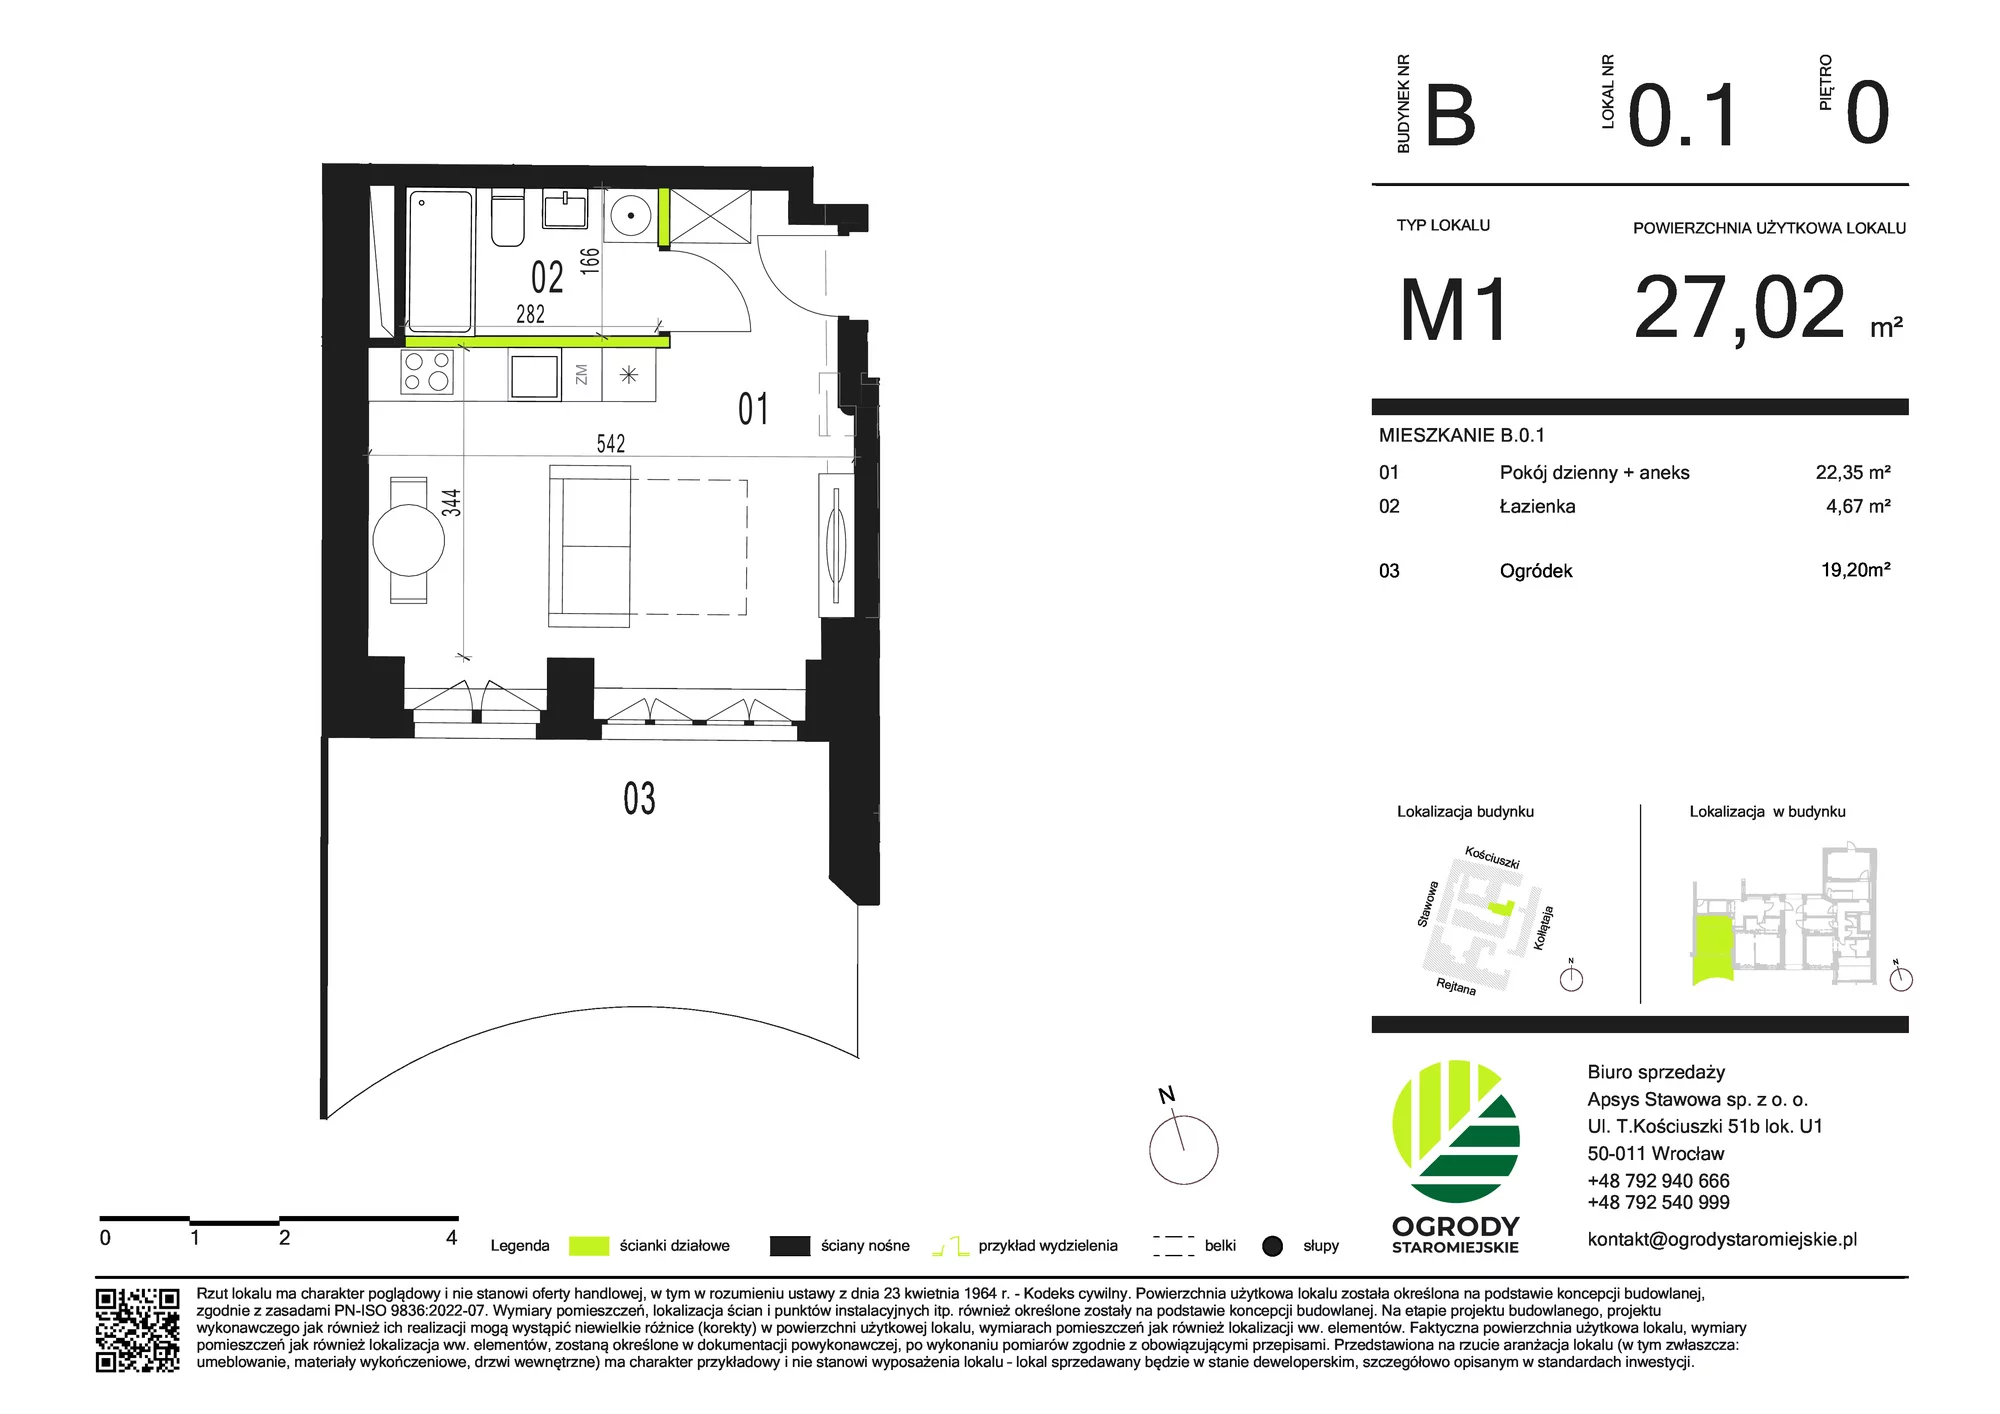 Mieszkanie 27,02 m², parter, oferta nr B.0.1, Ogrody Staromiejskie, Wrocław, Przedmieście Świdnickie, ul. Stawowa 10